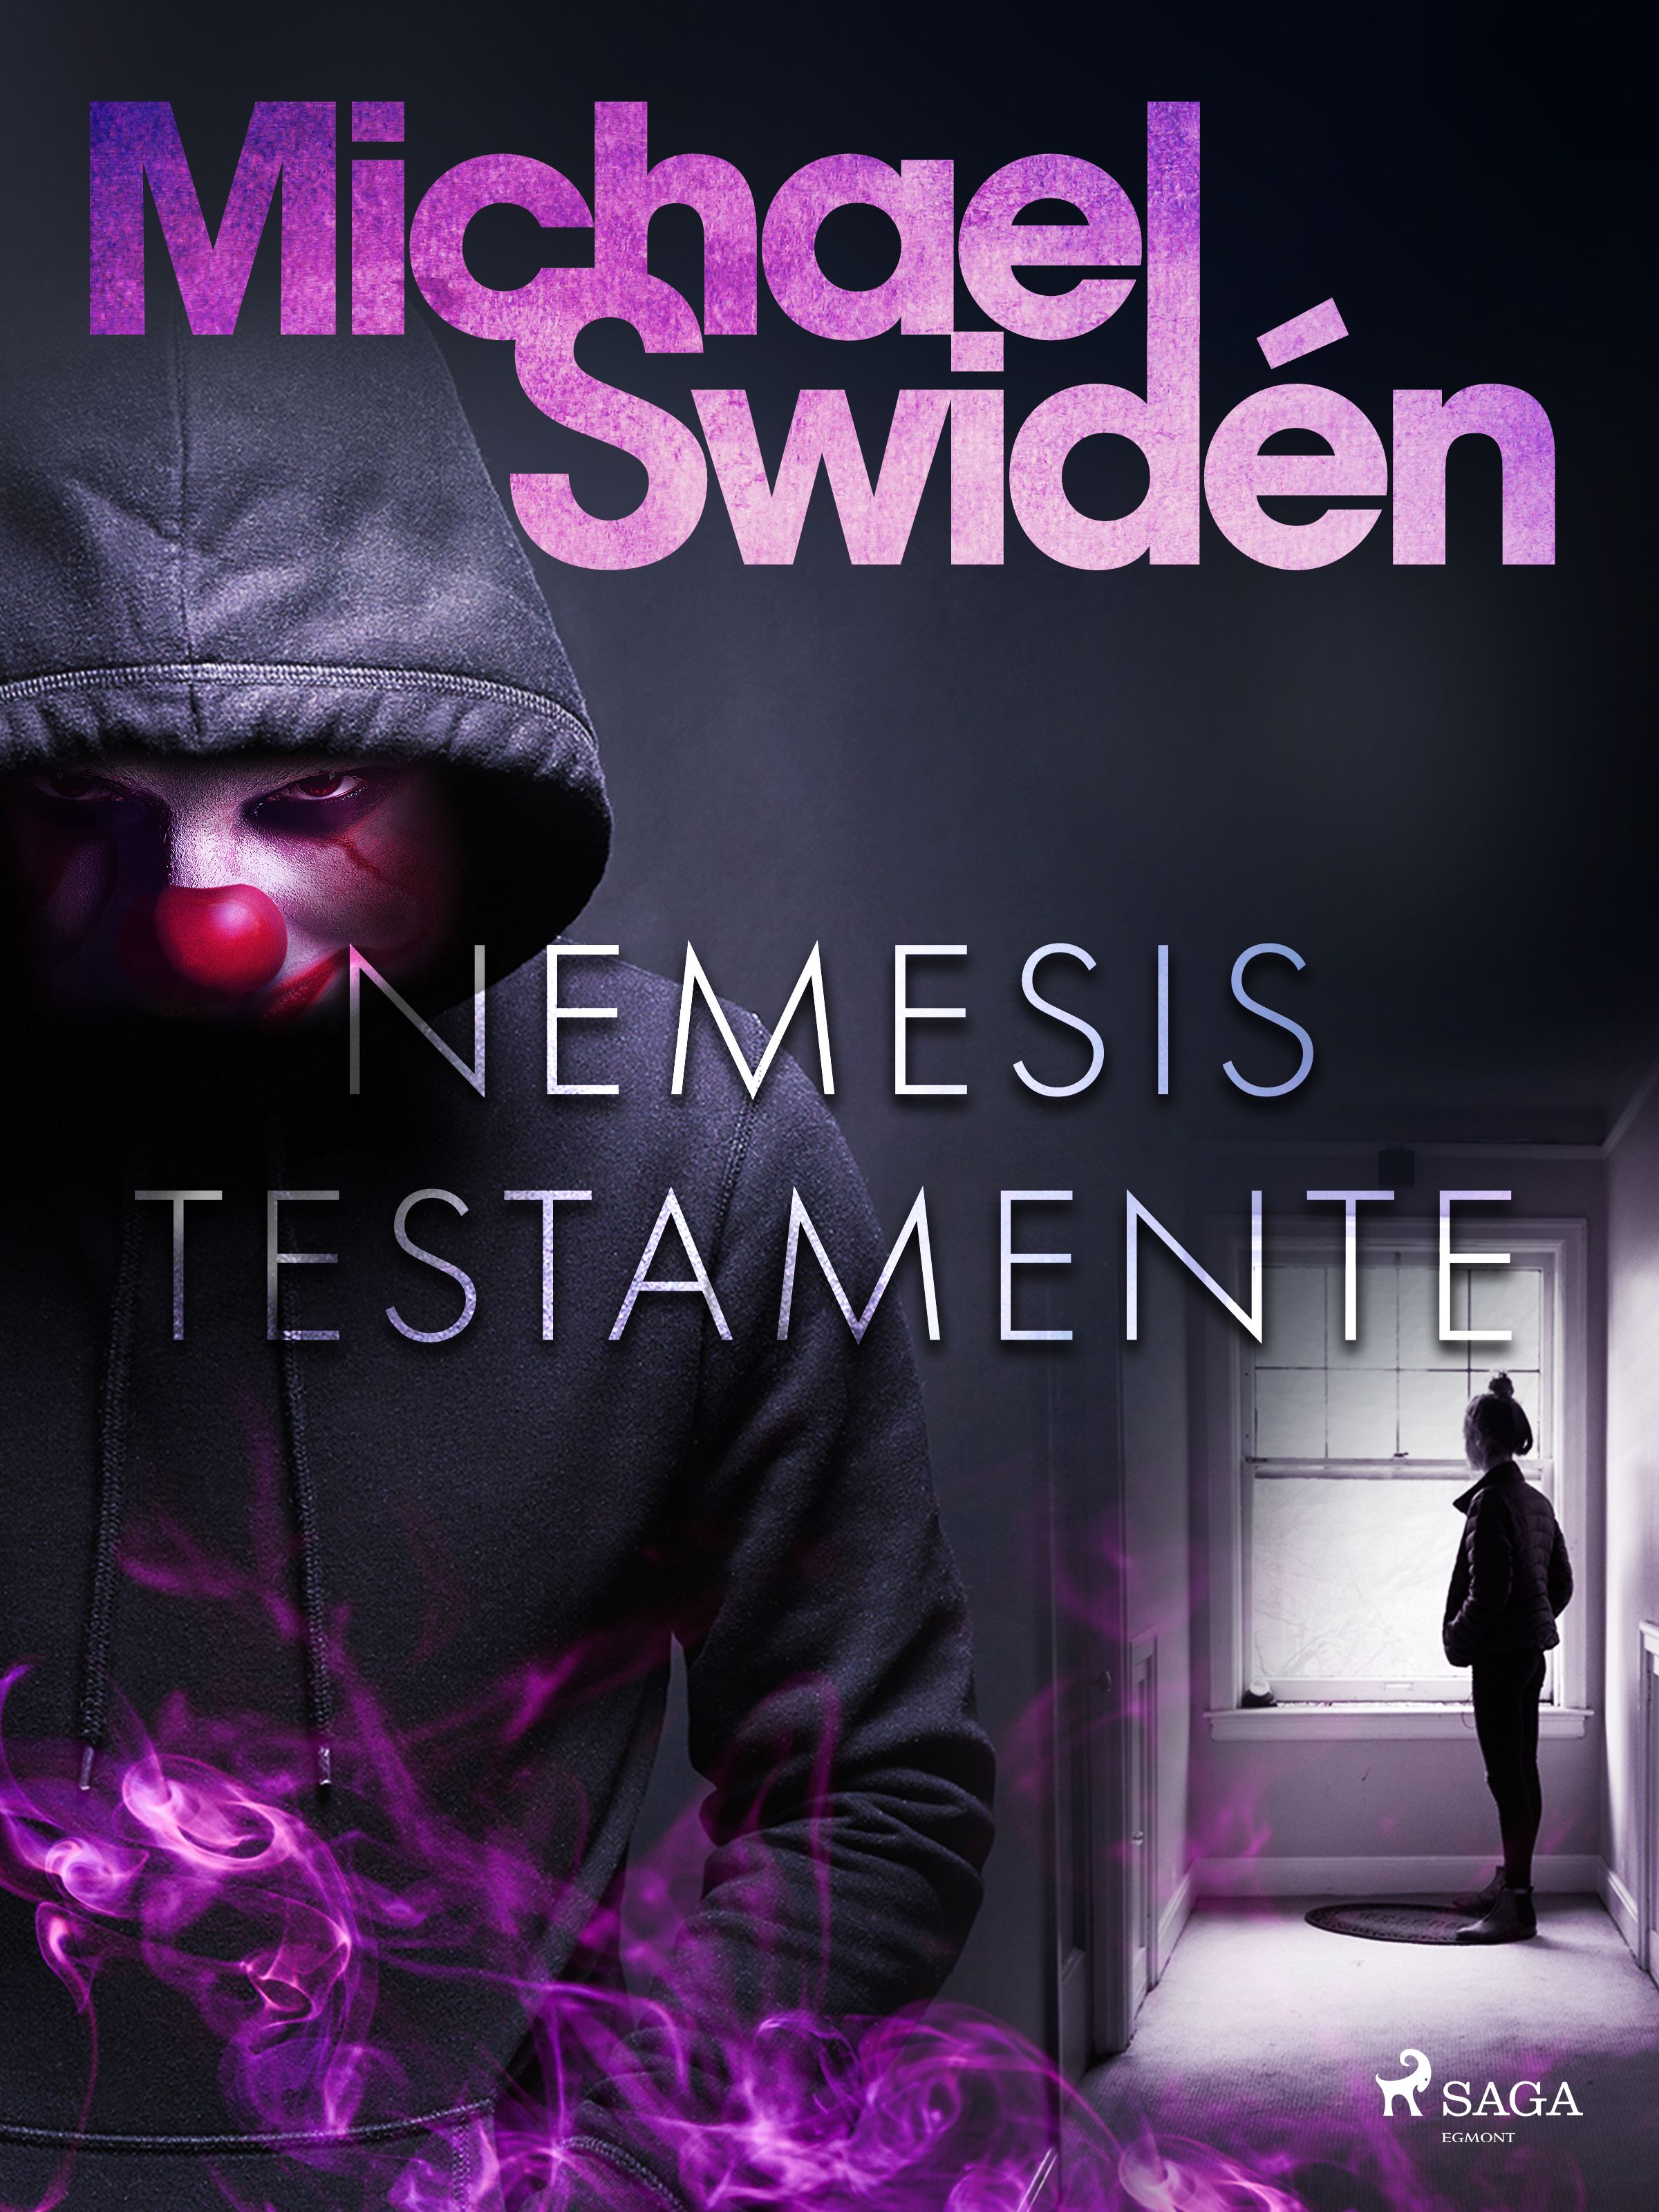 Nemesis testamente, e-bok av Michael Swidén